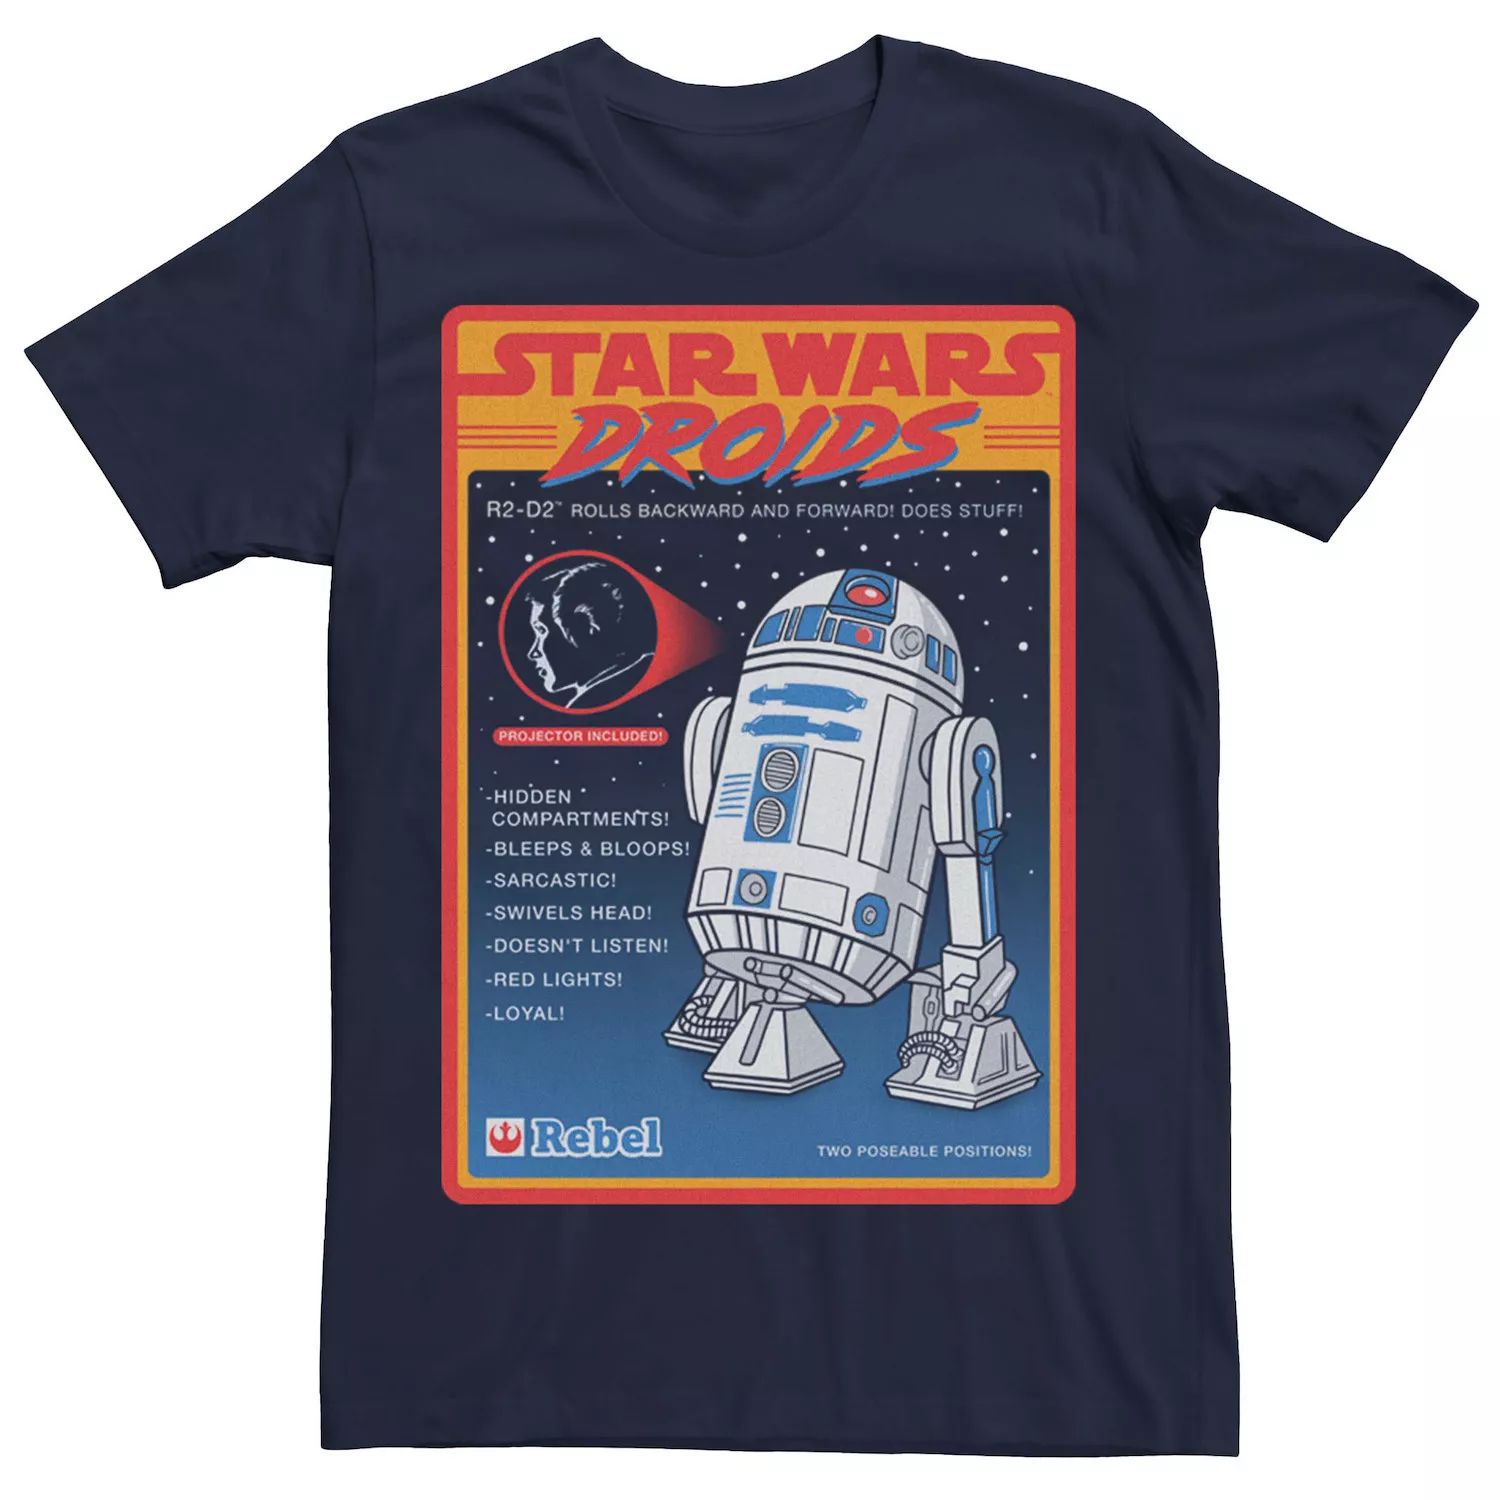 Мужская футболка с рекламным плакатом «Звездные военные дроиды» R2-D2, Синяя Star Wars, синий